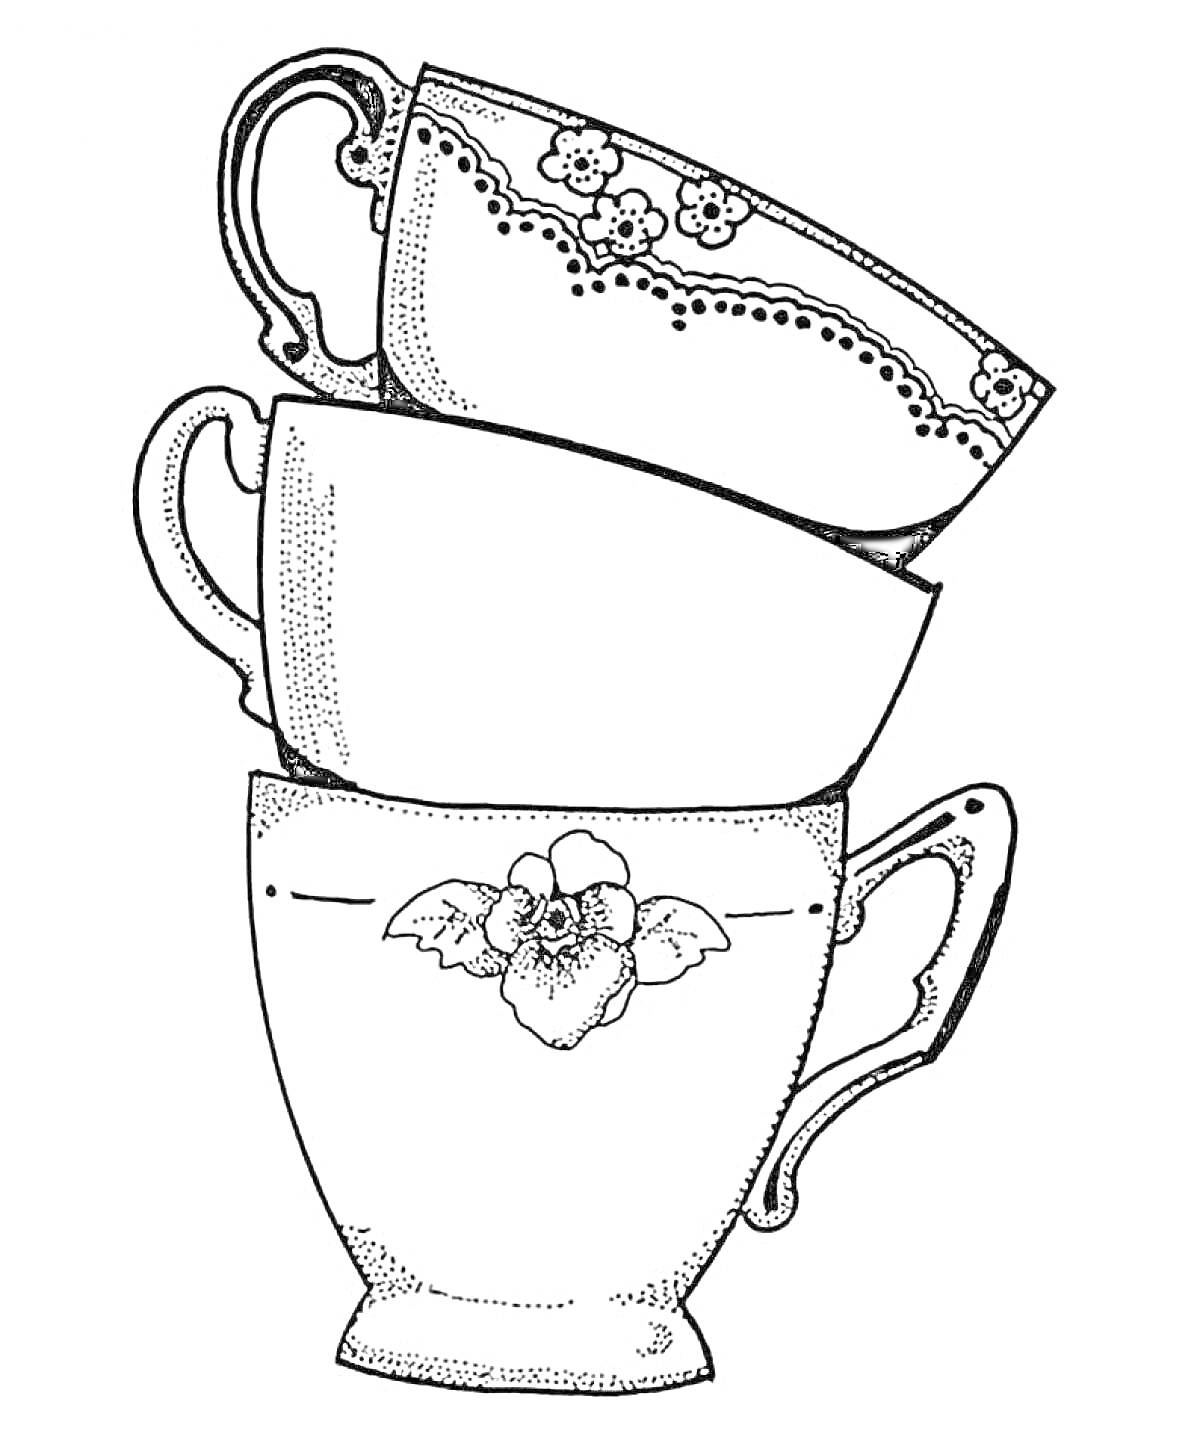 Раскраска Три чашки с цветочными узорами, сложенные друг на друга